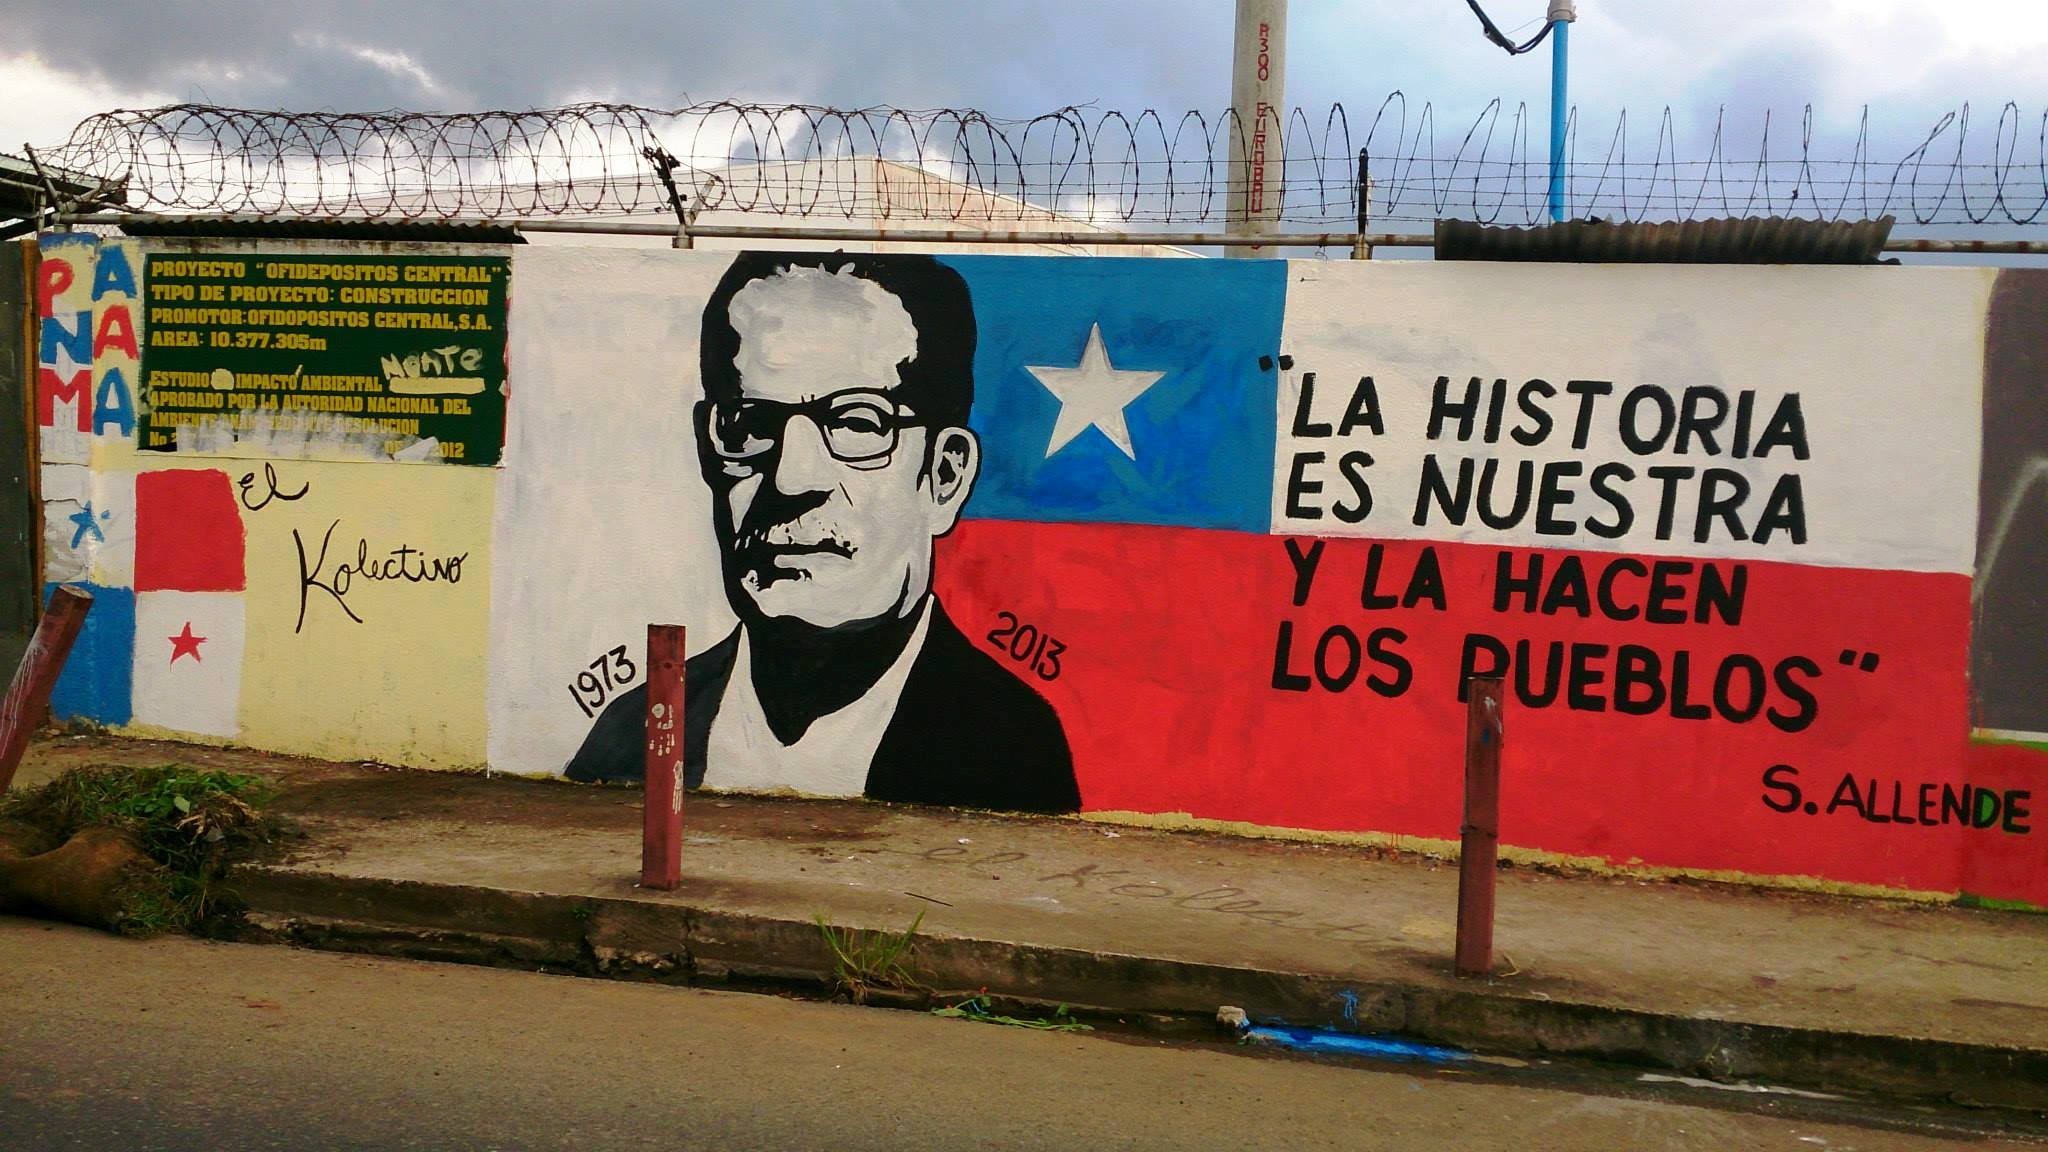 11 SEPTEMBRE 1973 : Coup d’état au Chili contre Salvador Allende